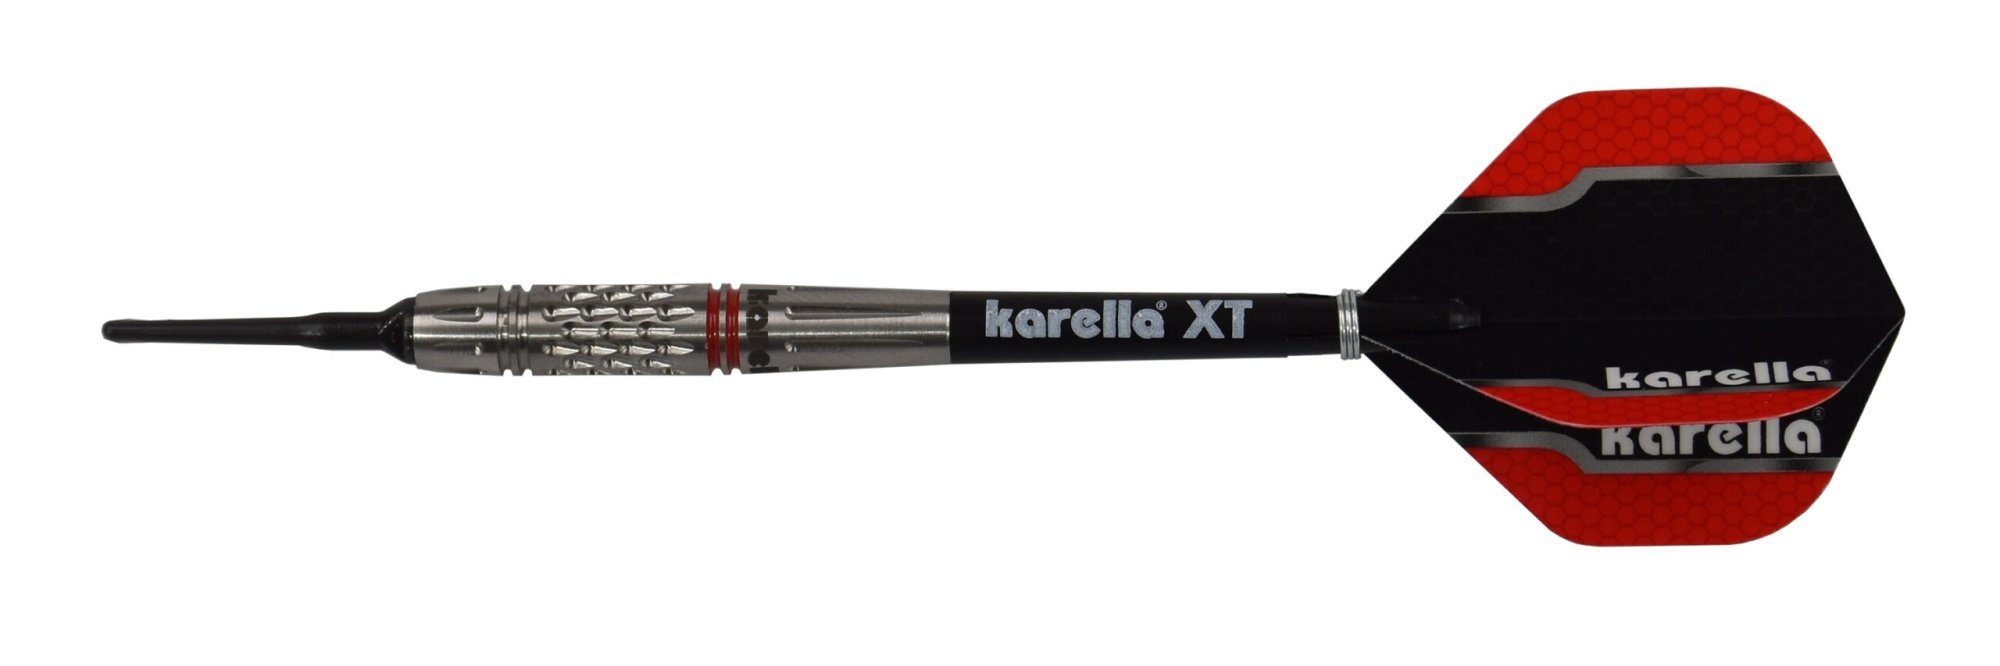 silber, 90% Karella Karella Softdart Dartpfeil 21g oder Commander, 19g Tungsten,